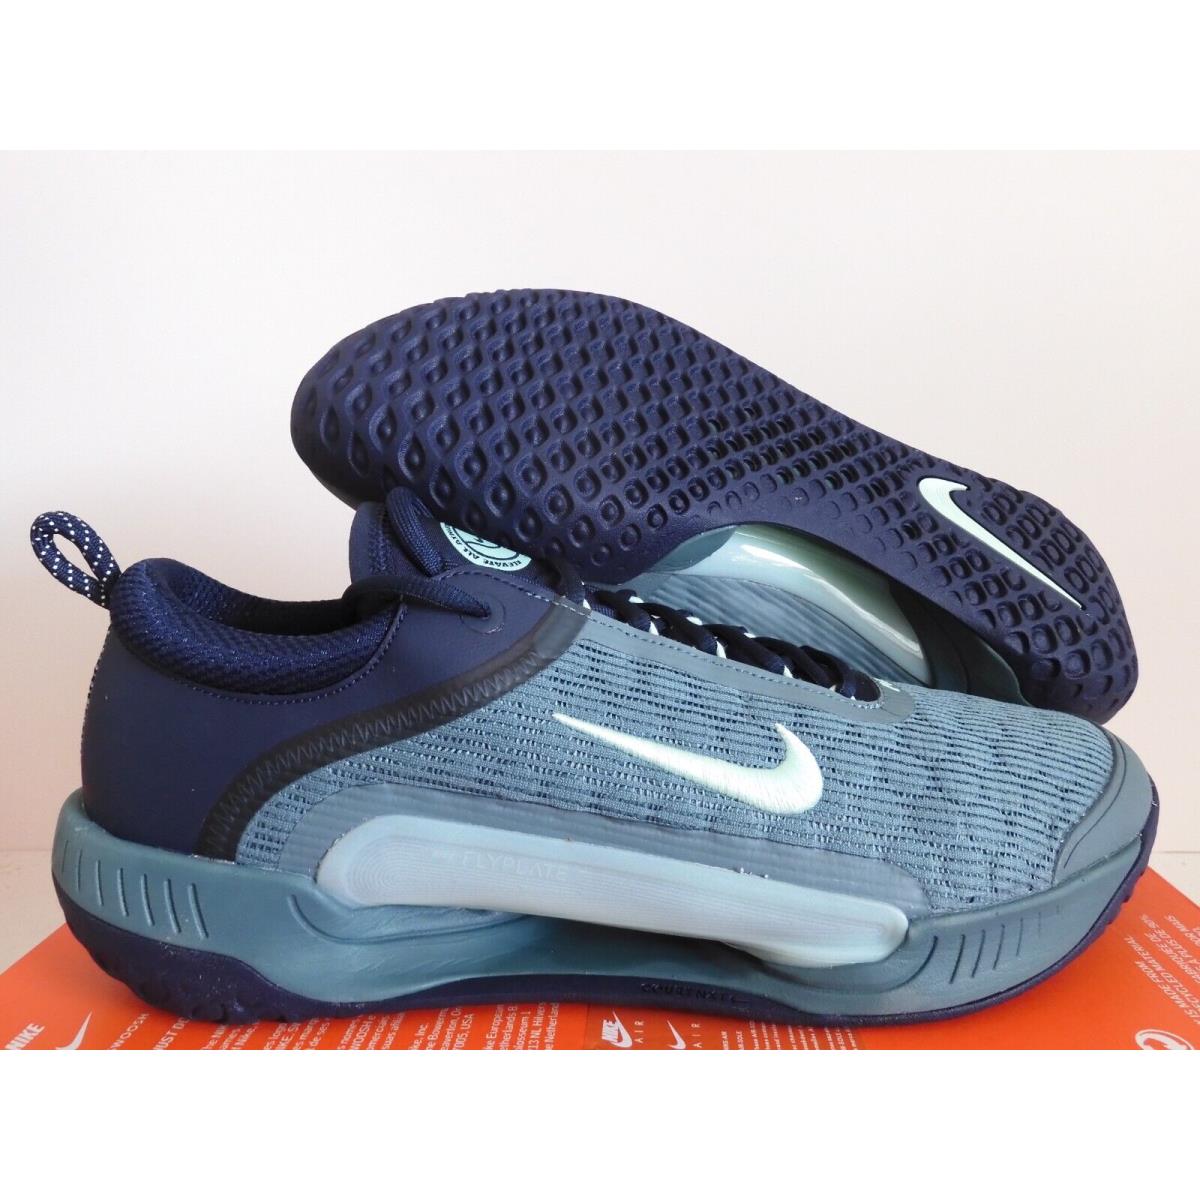 Nike Zoom Court Nxt HC Obsidian Blue-mint Foam SZ 15 Tennis DH0219-410